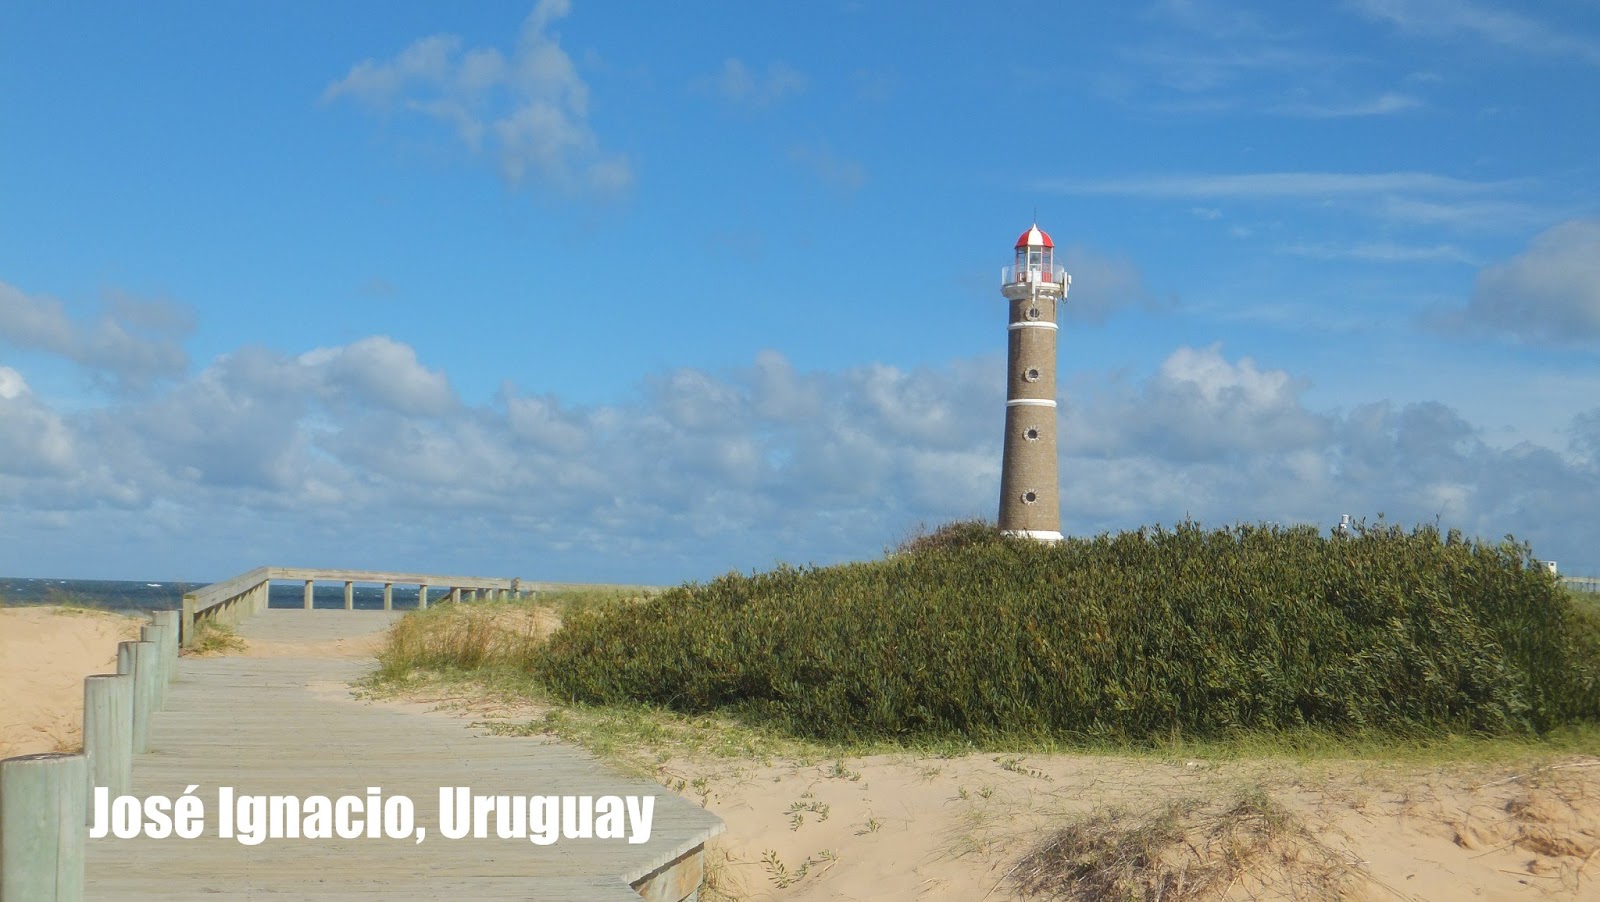 Faro de José Ignacio, Uruguay, Elisa N, Blog de Viajes, Lifestyle, Travel